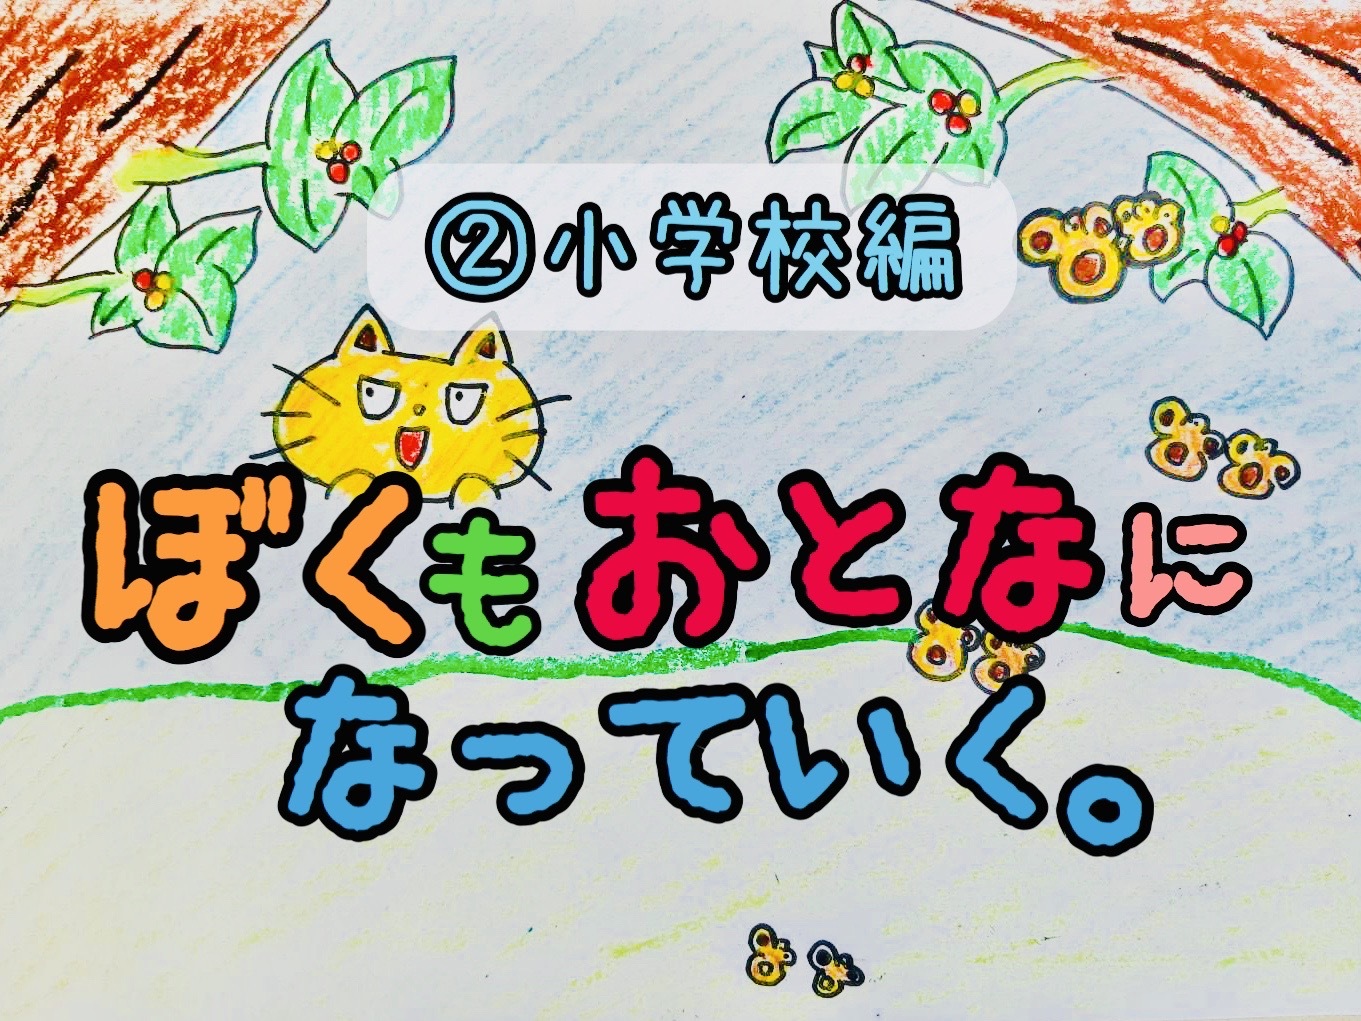 アニメ ぼくもおとなになっていく 小学校編 ネコと沖縄の生き物が登場する ほっこりストーリー ねこんちゅ通信 ネコのわくわく自然教室